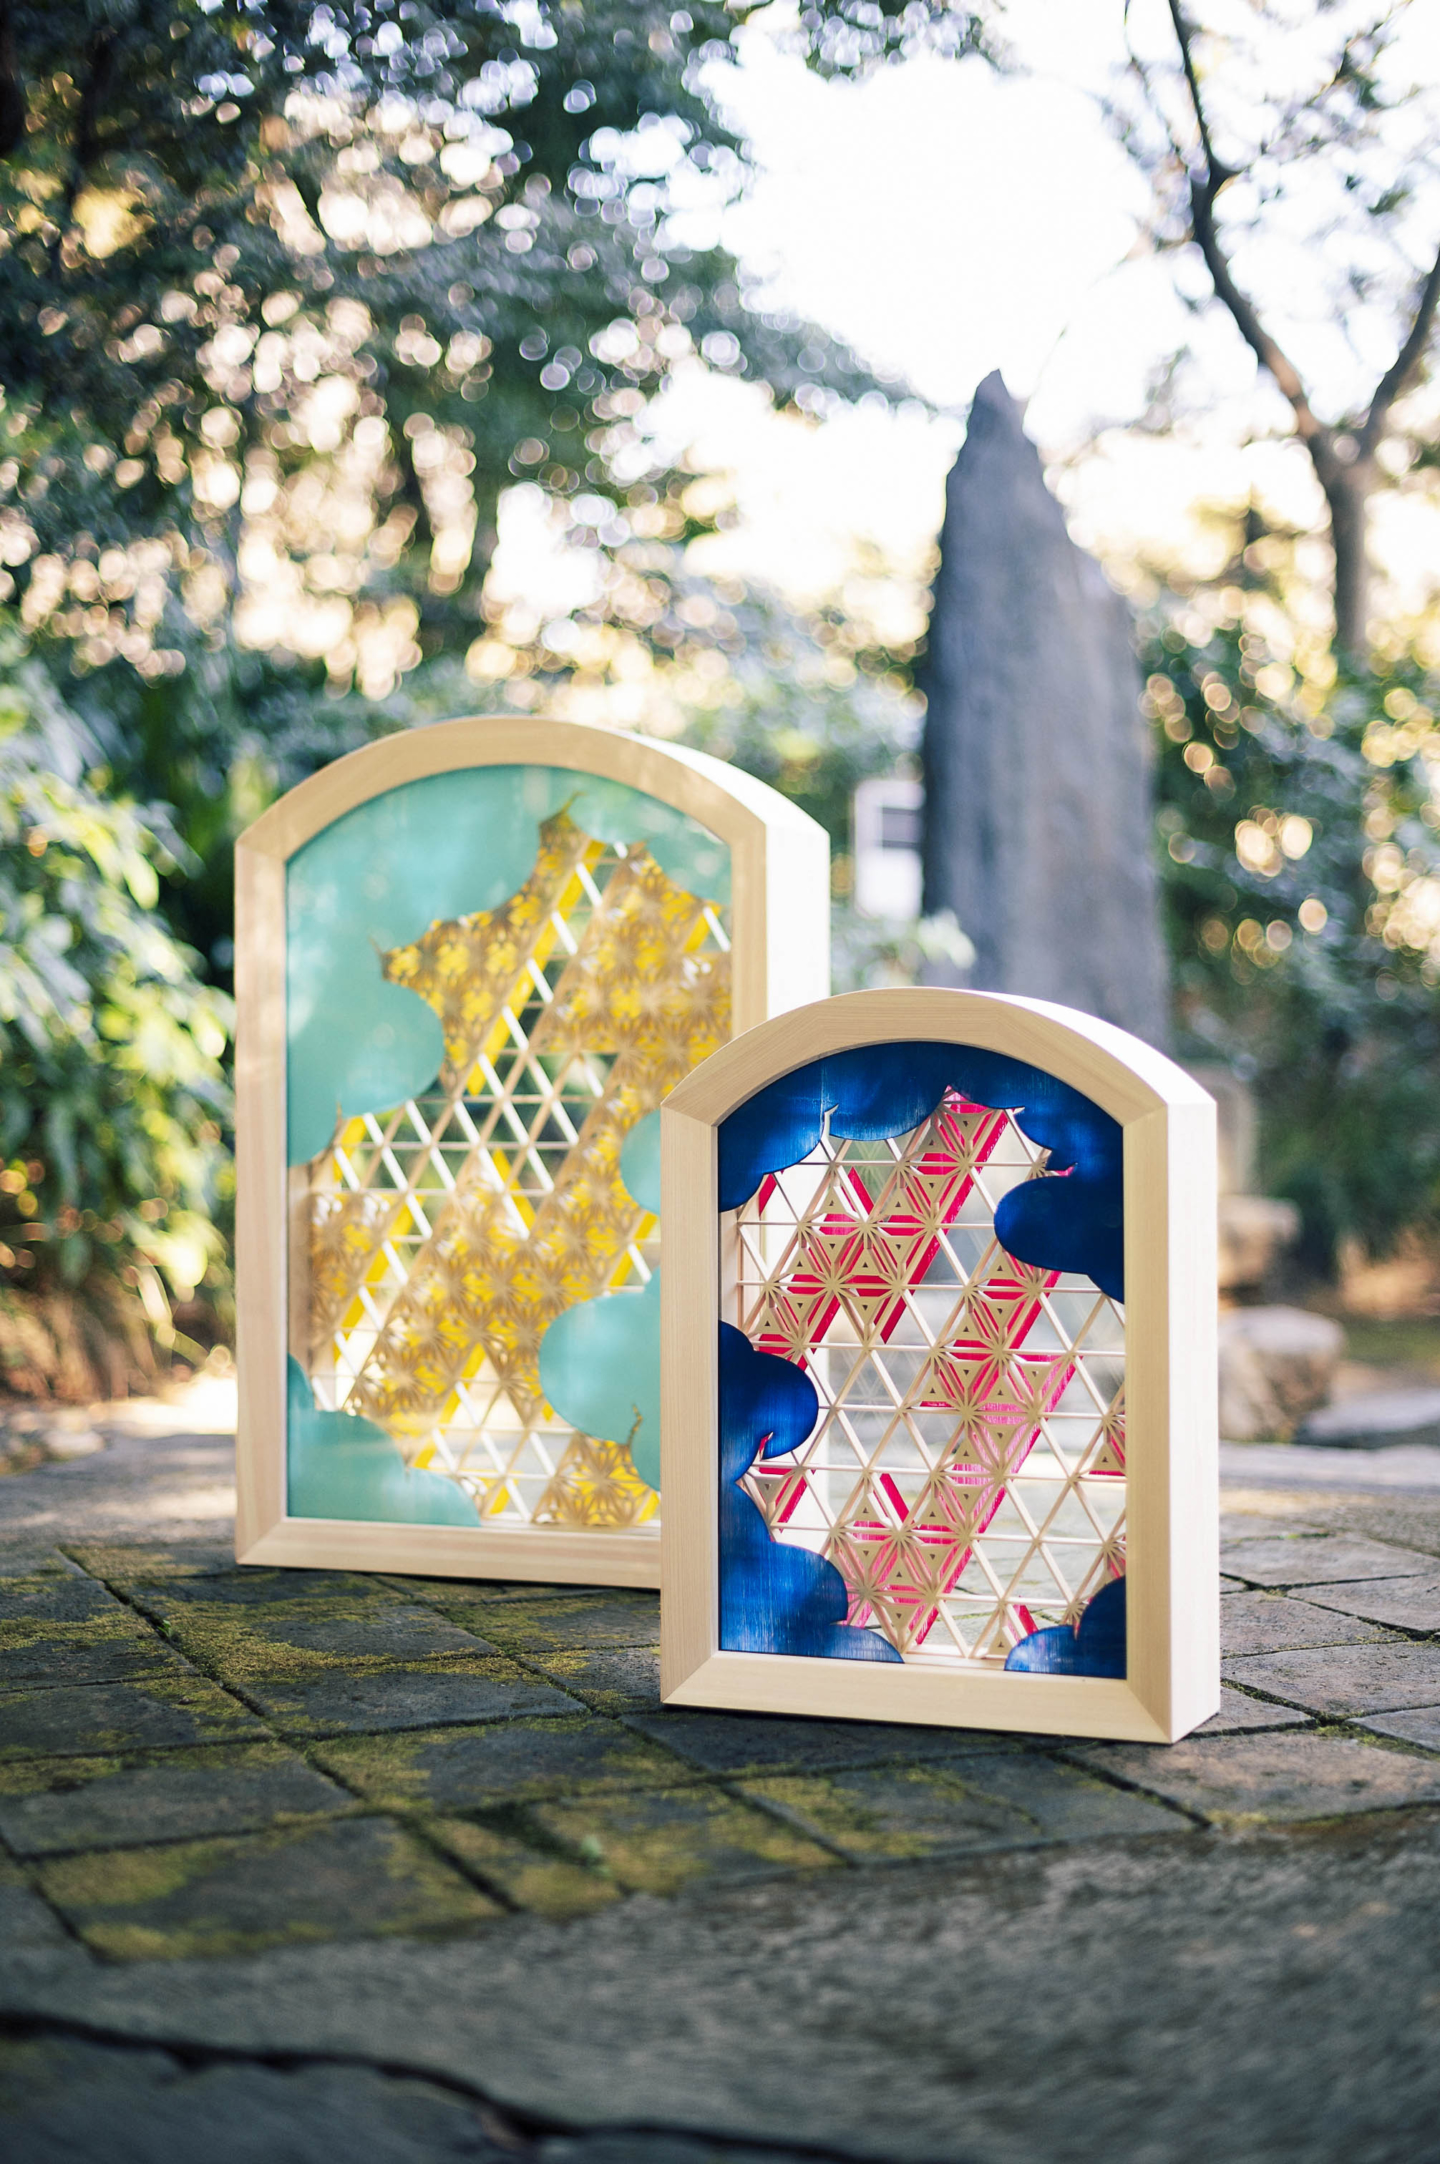 Une collaboration avec un artiste pour étendre les possibilités de l’art du kumiko